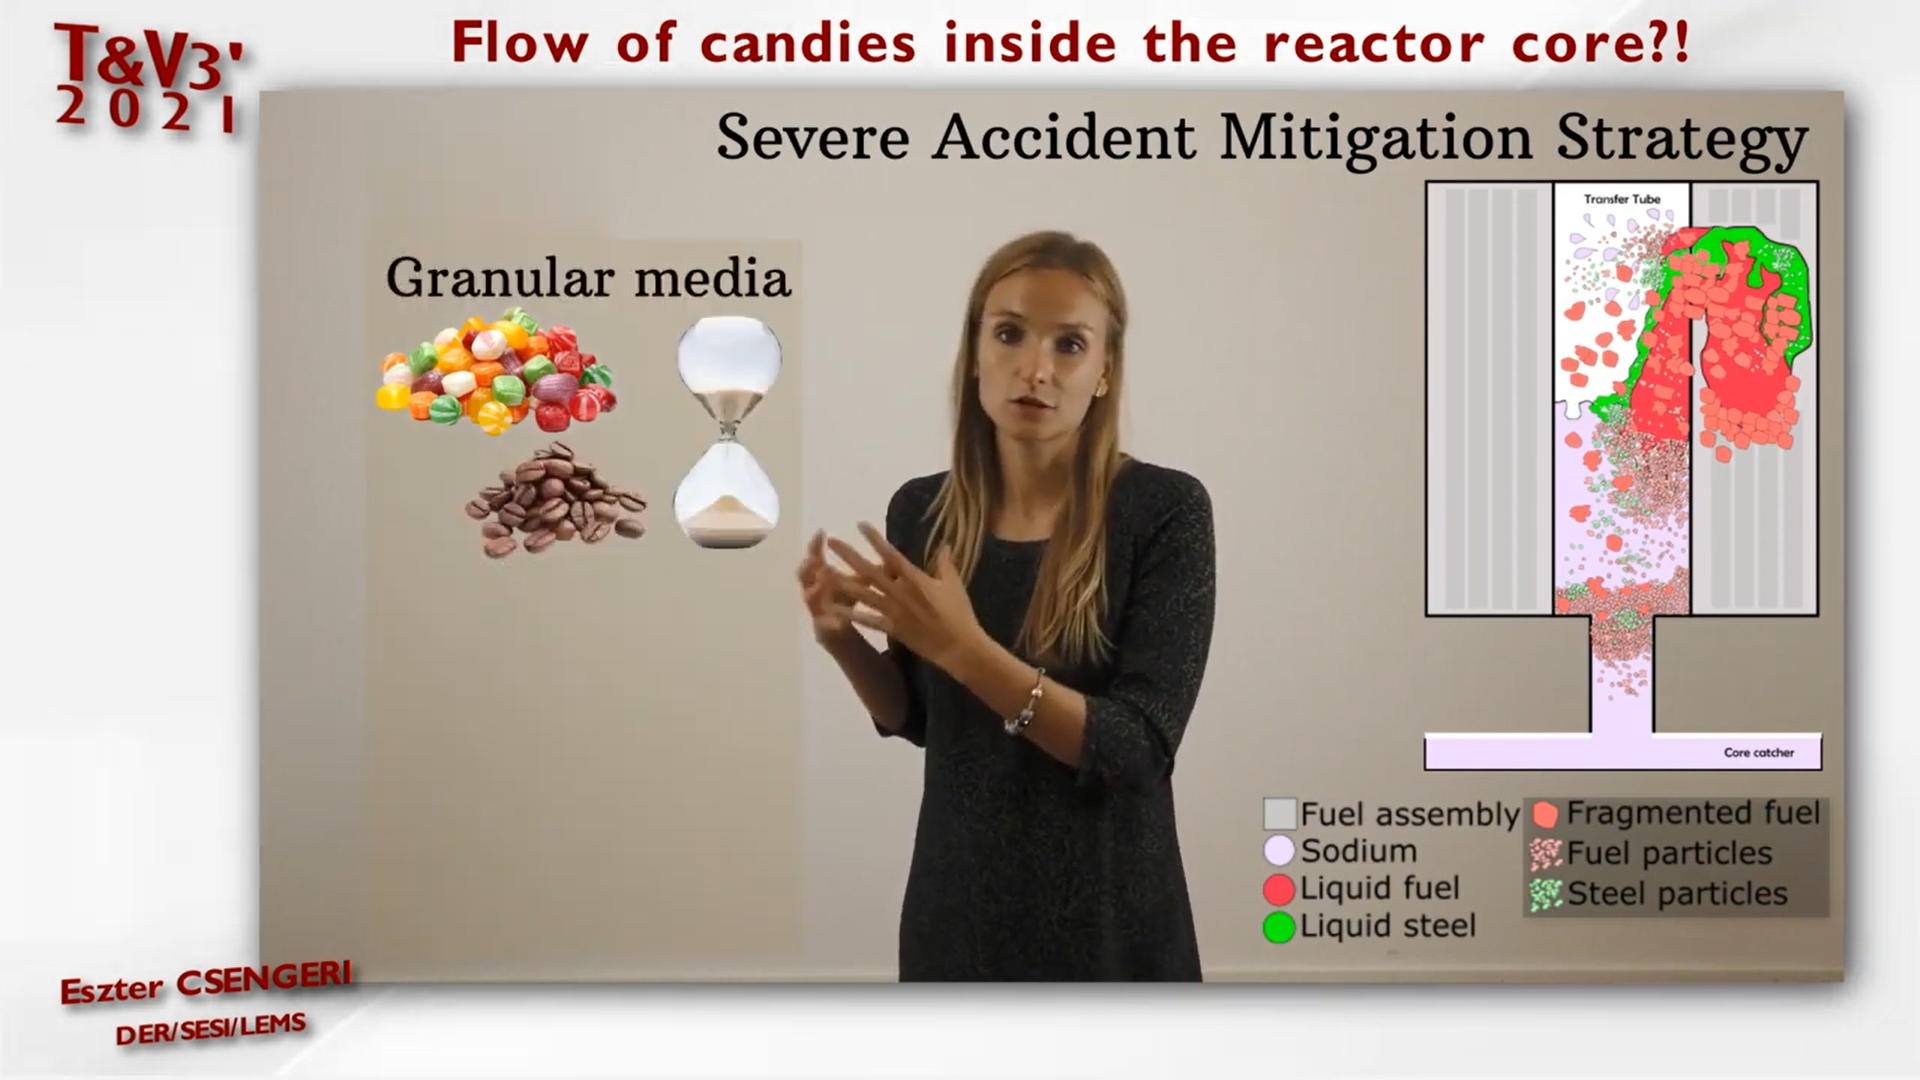 "Flow of candies inside the reactor core?!" par Eszter Csengeri.